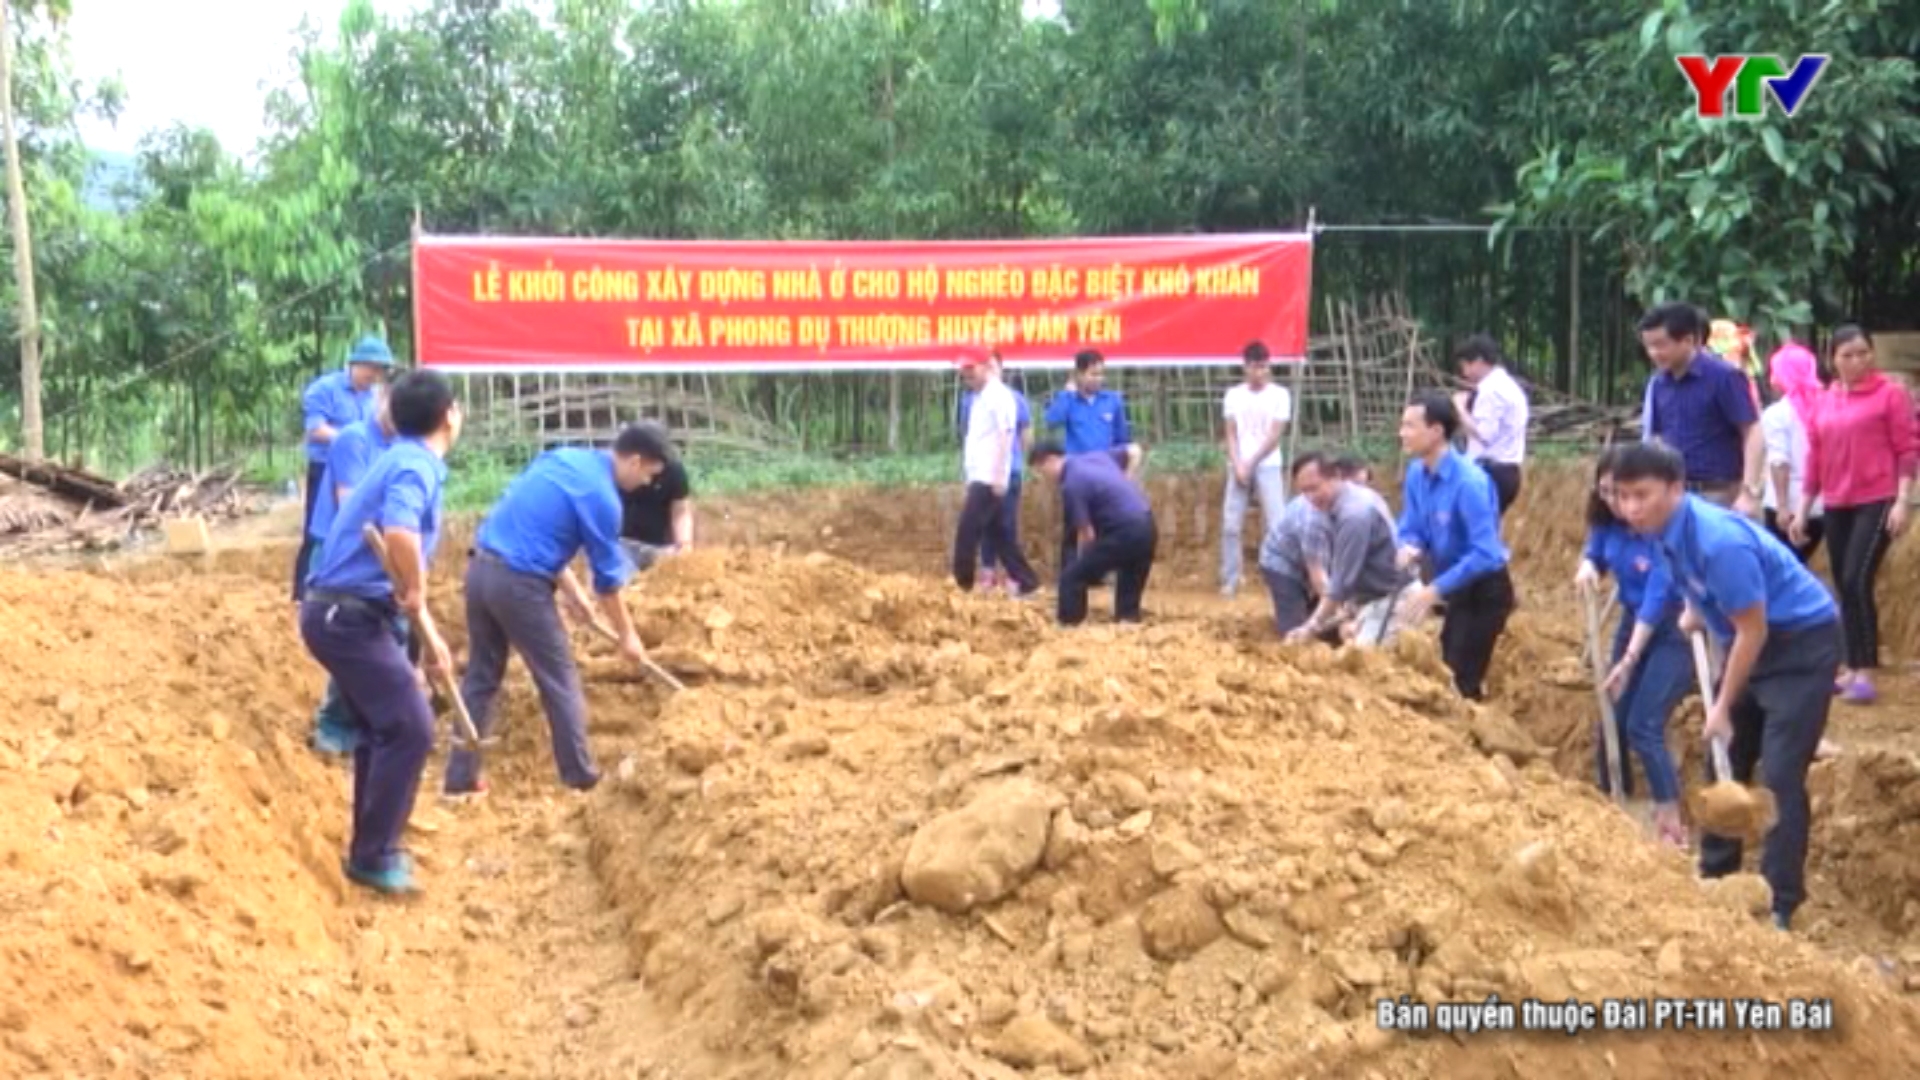 Thanh tra tỉnh khởi công xây dựng nhà ở cho 2 hộ nghèo huyện Văn Yên